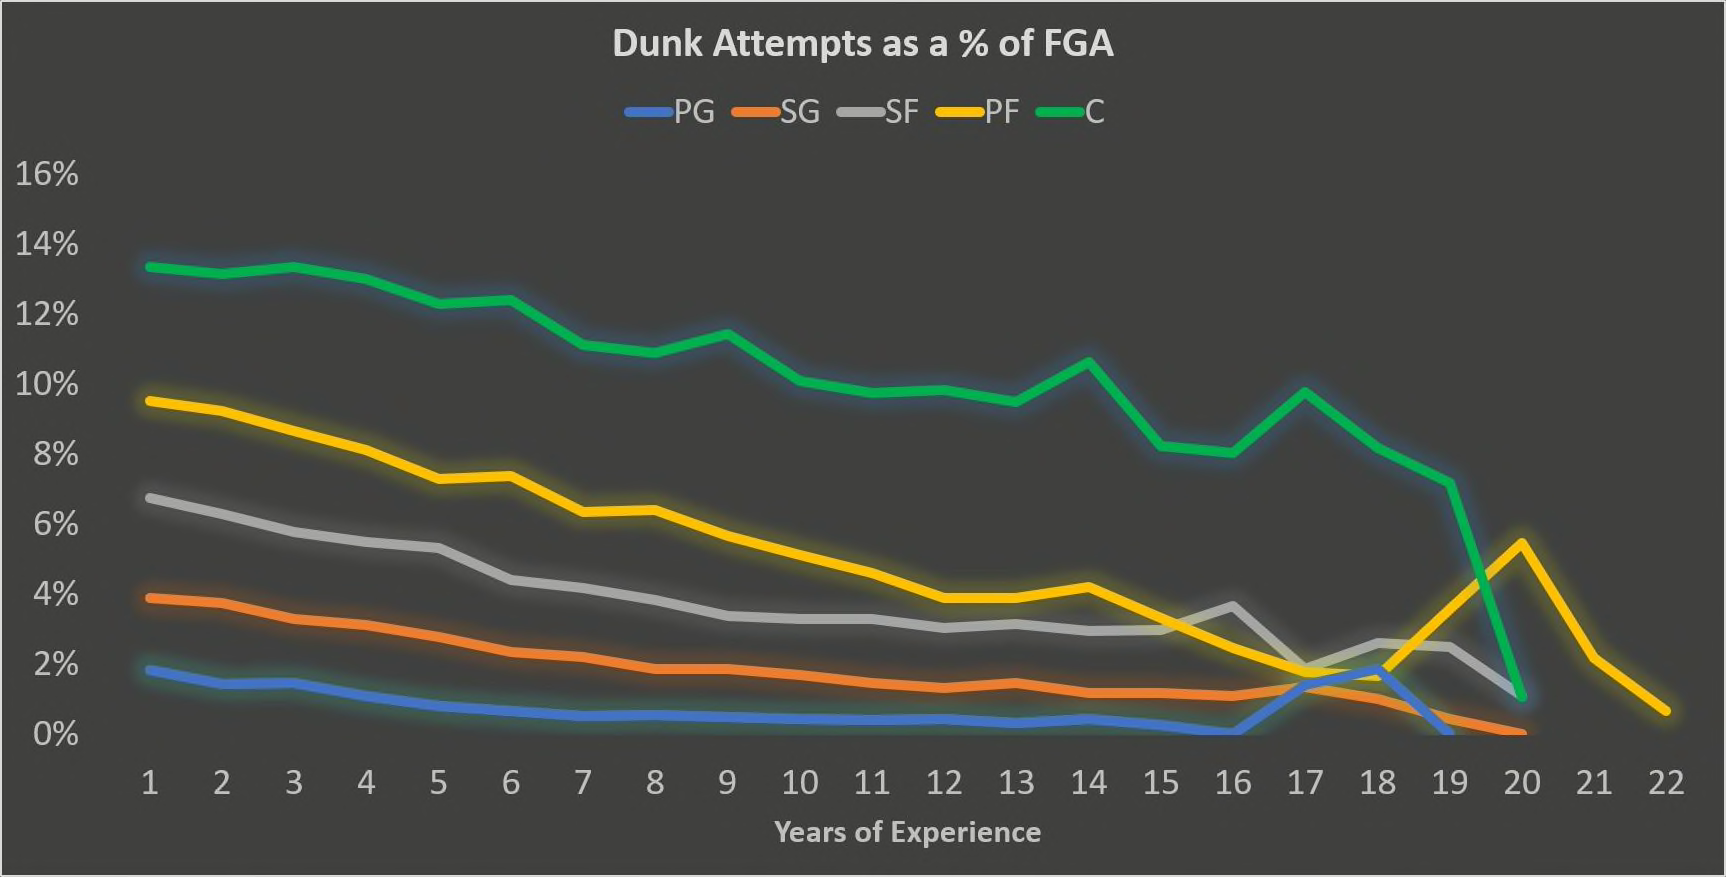 LeBron James et la courbe de vieillissement slam dunk